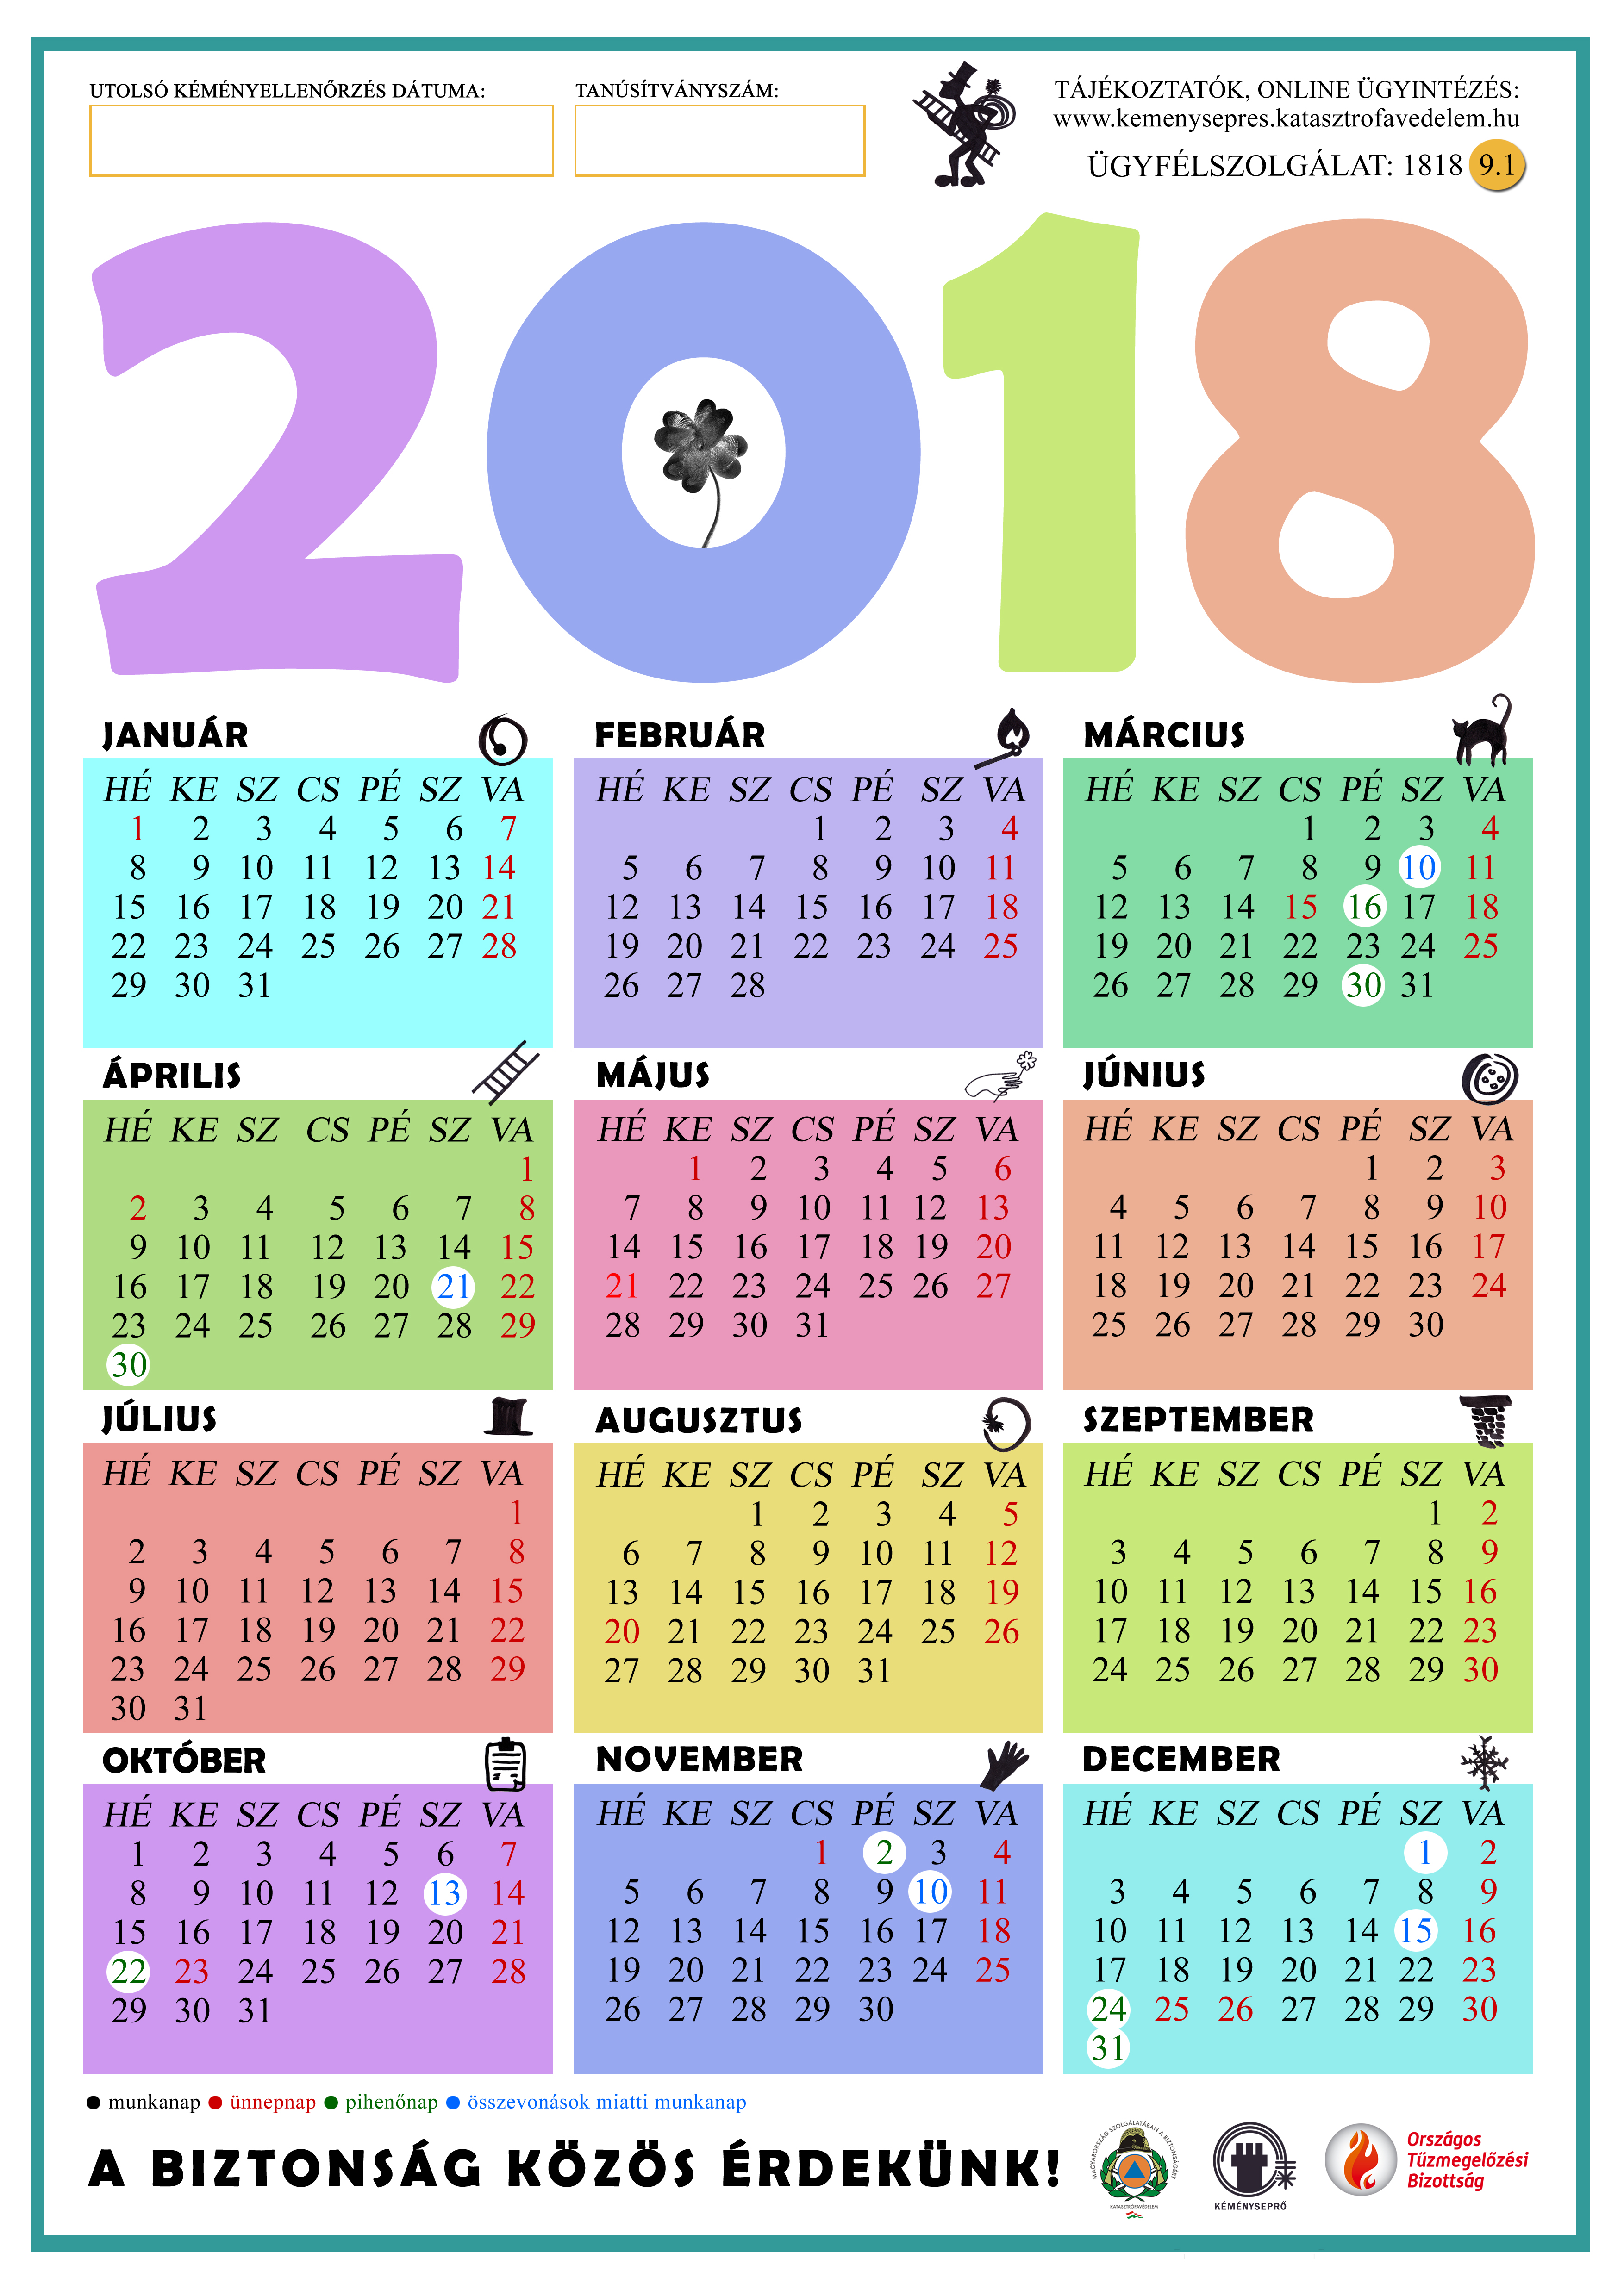 2018-as naptár előképe